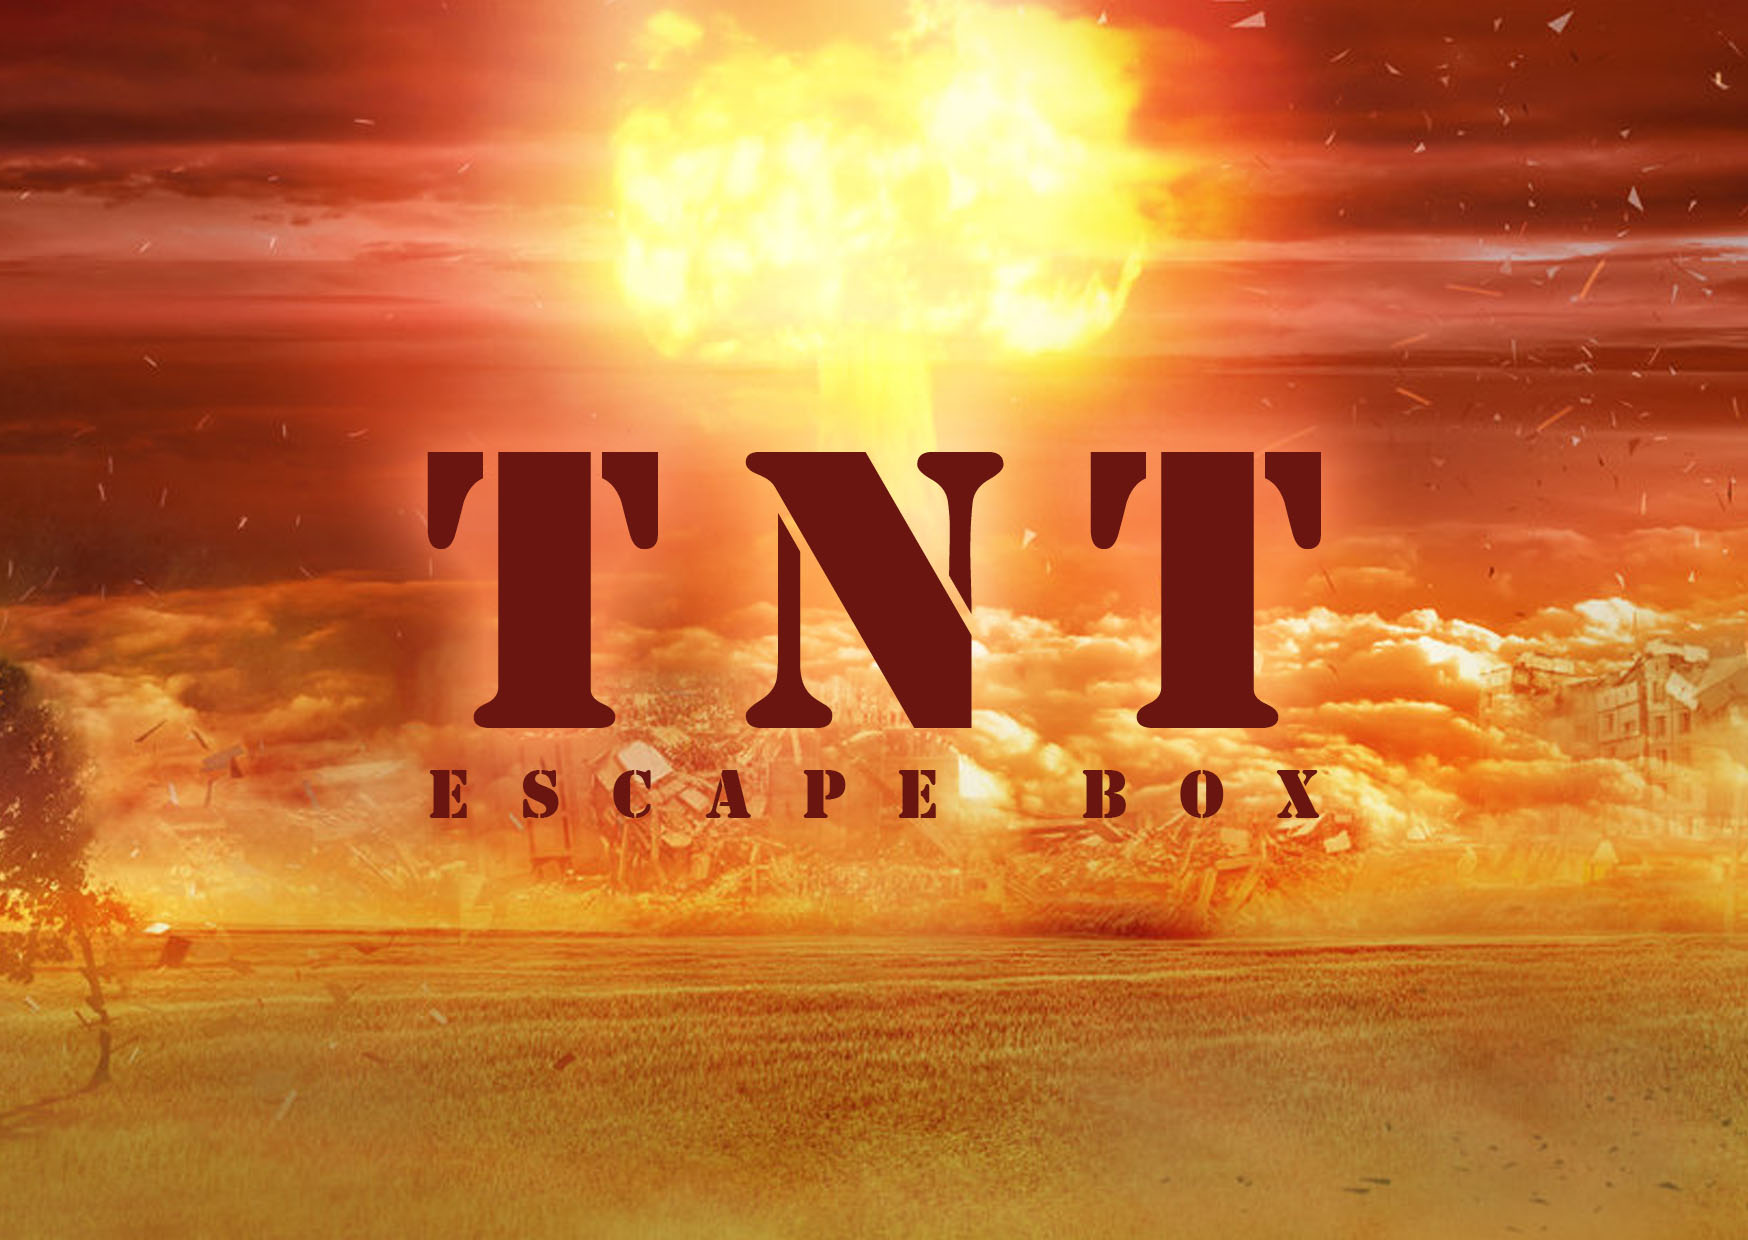 Logo "TNT" escape box